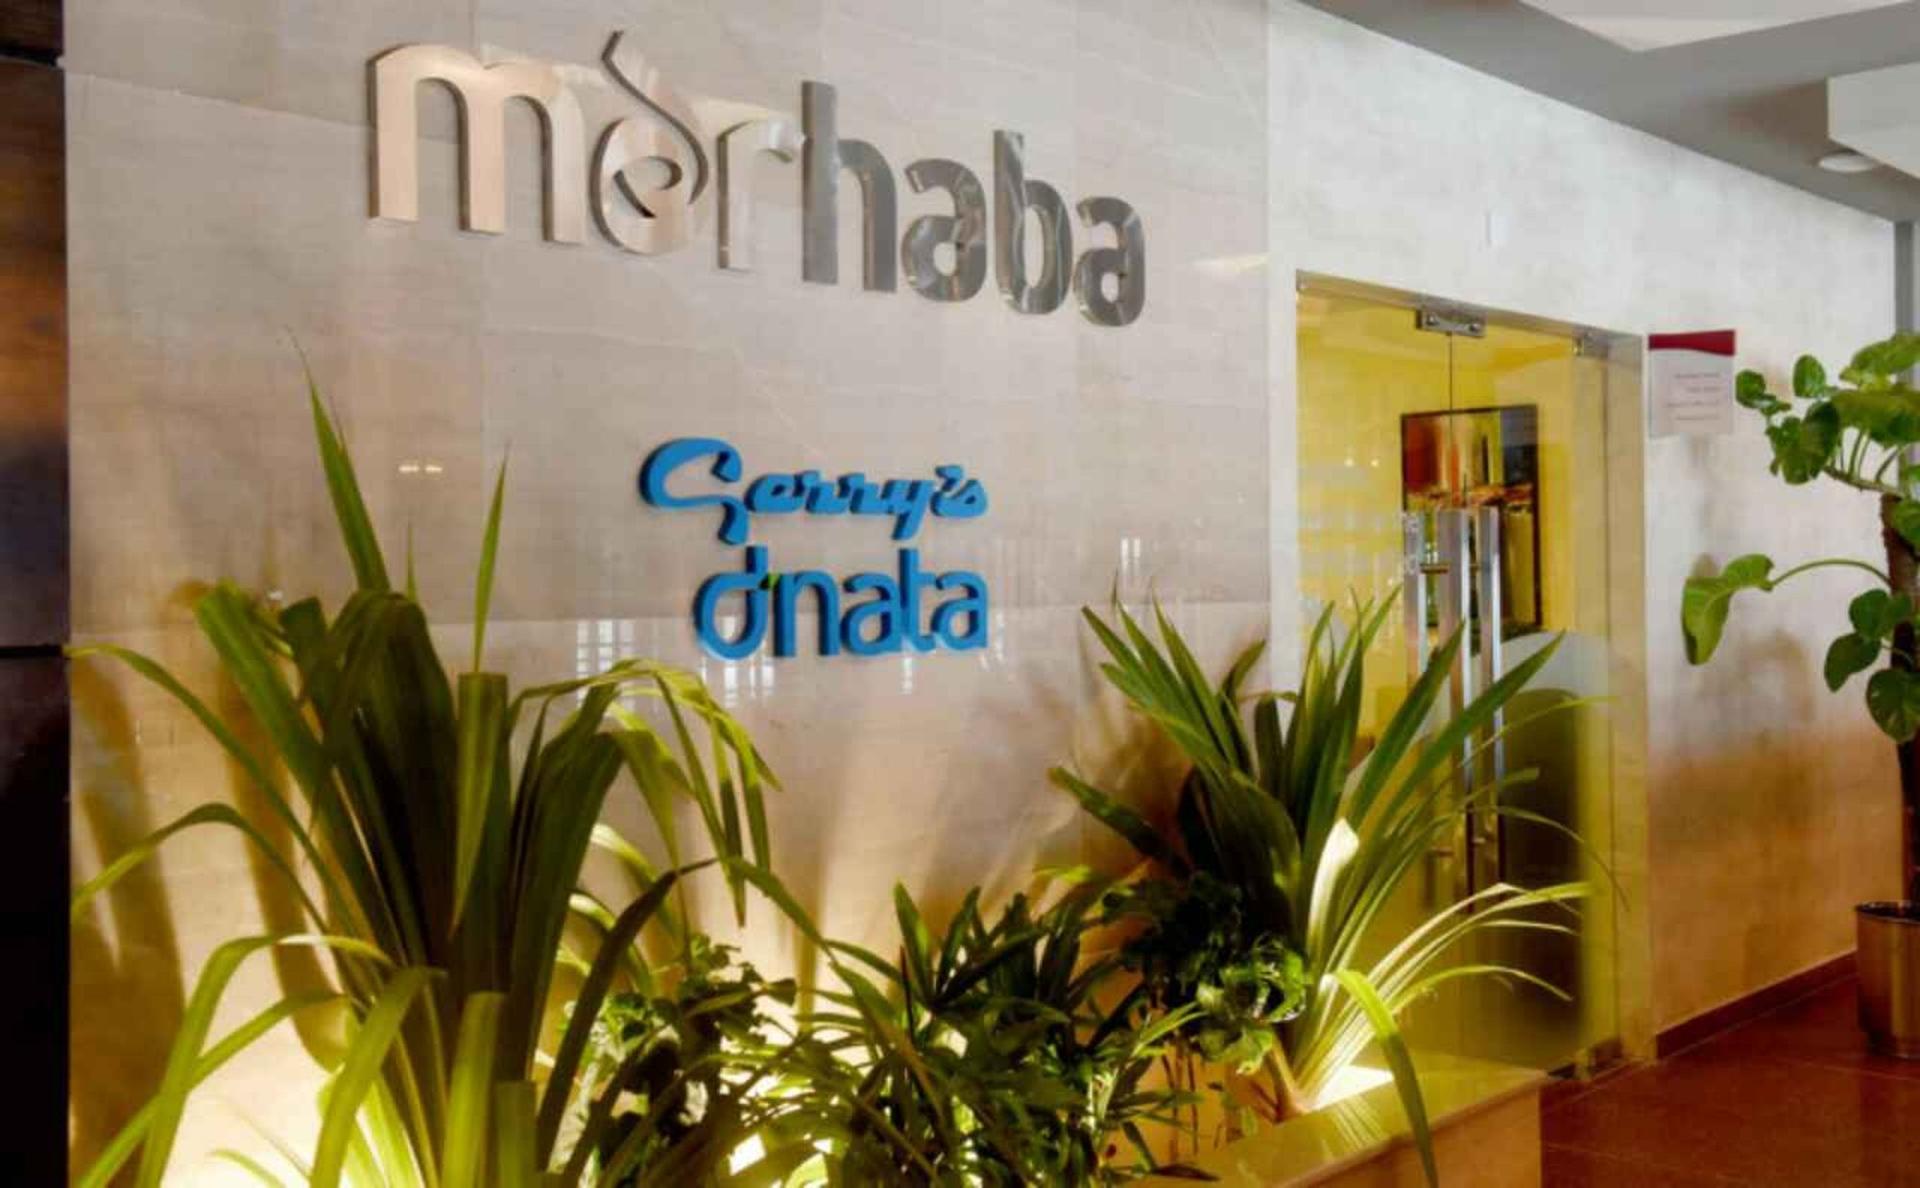 Marhaba Lounge image 3 of 8